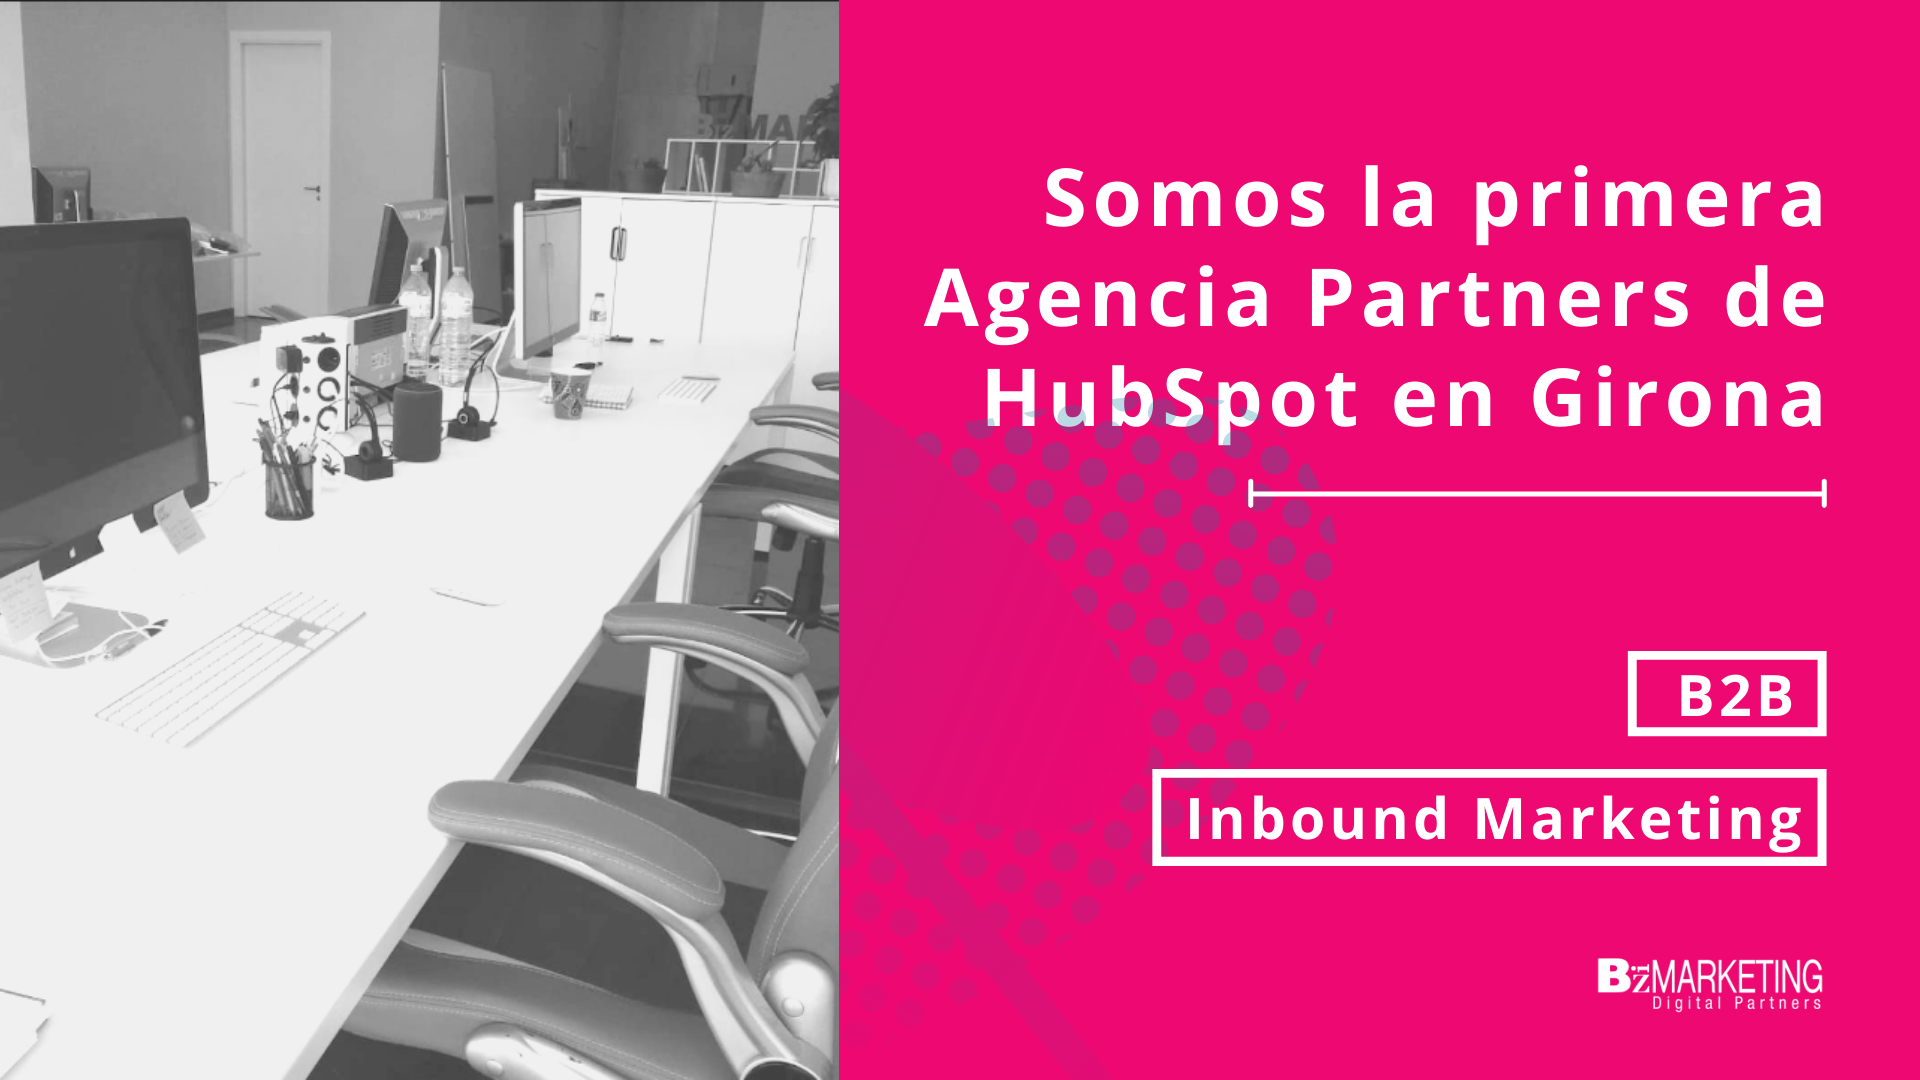 Somos la primera Agencia de HubSpot en Girona BizMarketing Inbound Marketing